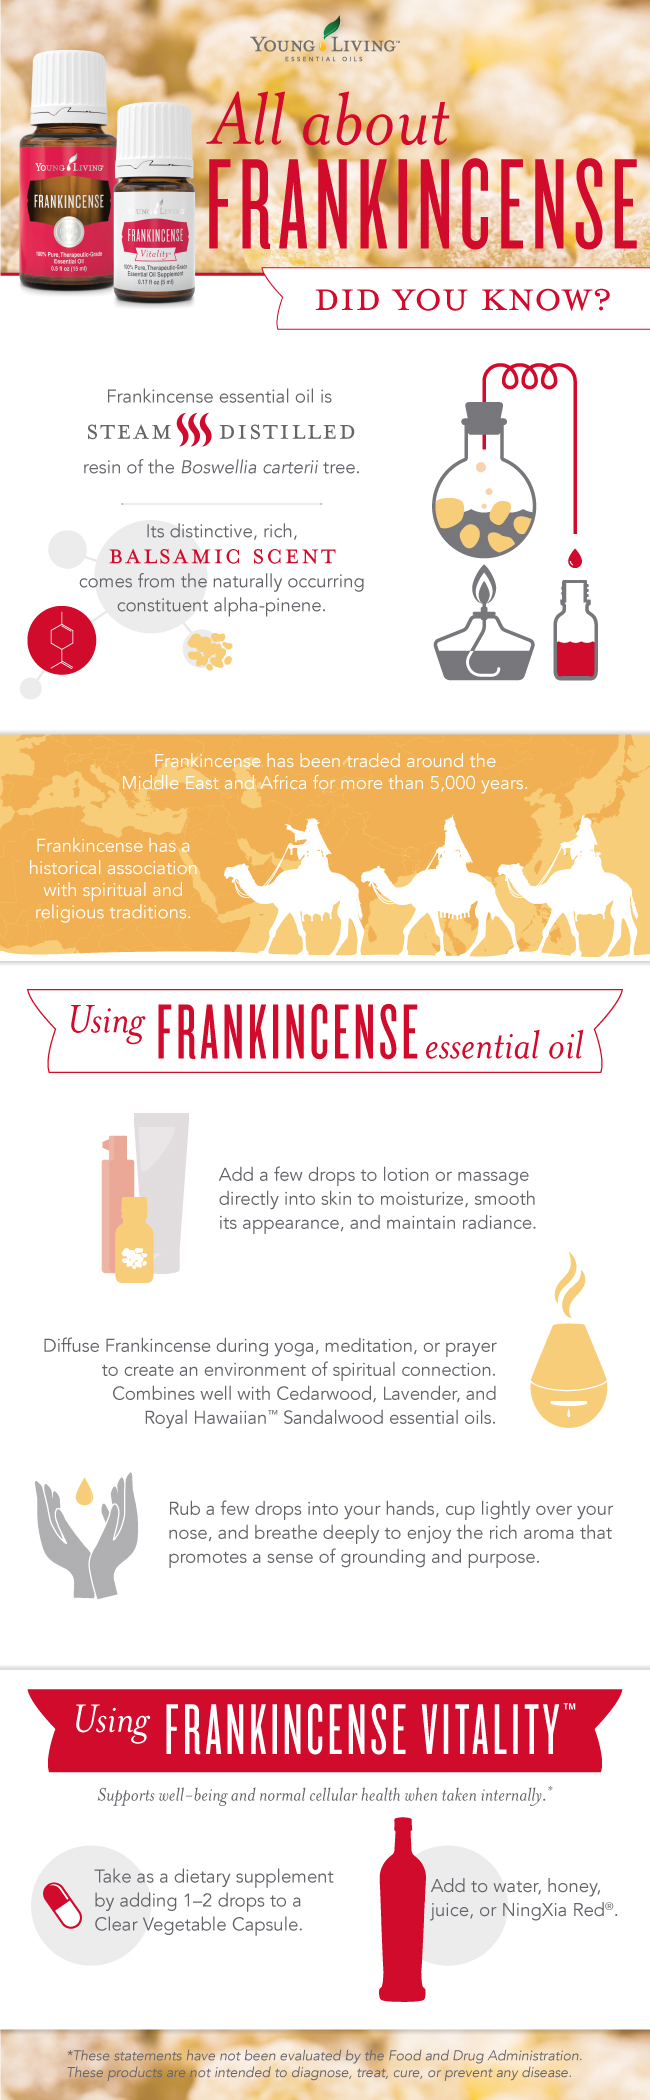 Blog-Frankincense_Infographic_US_0816_sk